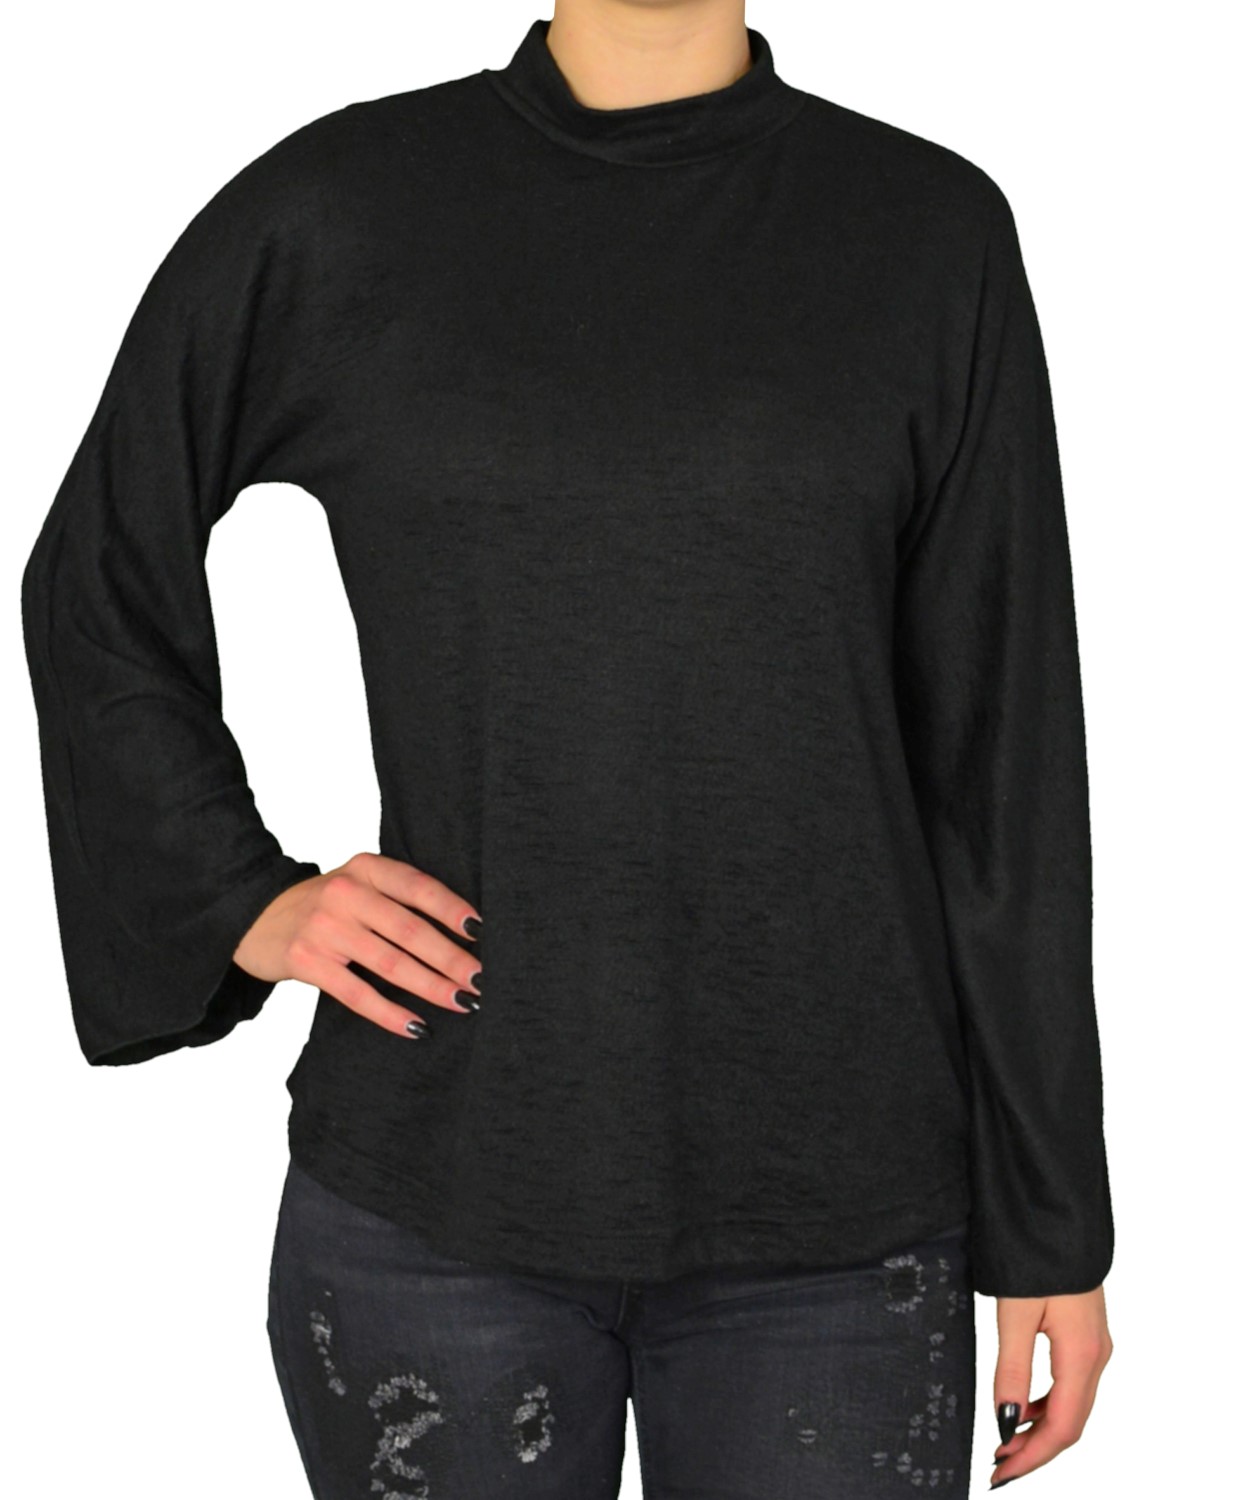 Γυναικεία πλεκτή μπλούζα Lipsy μαύρη ζιβάγκο 2170098